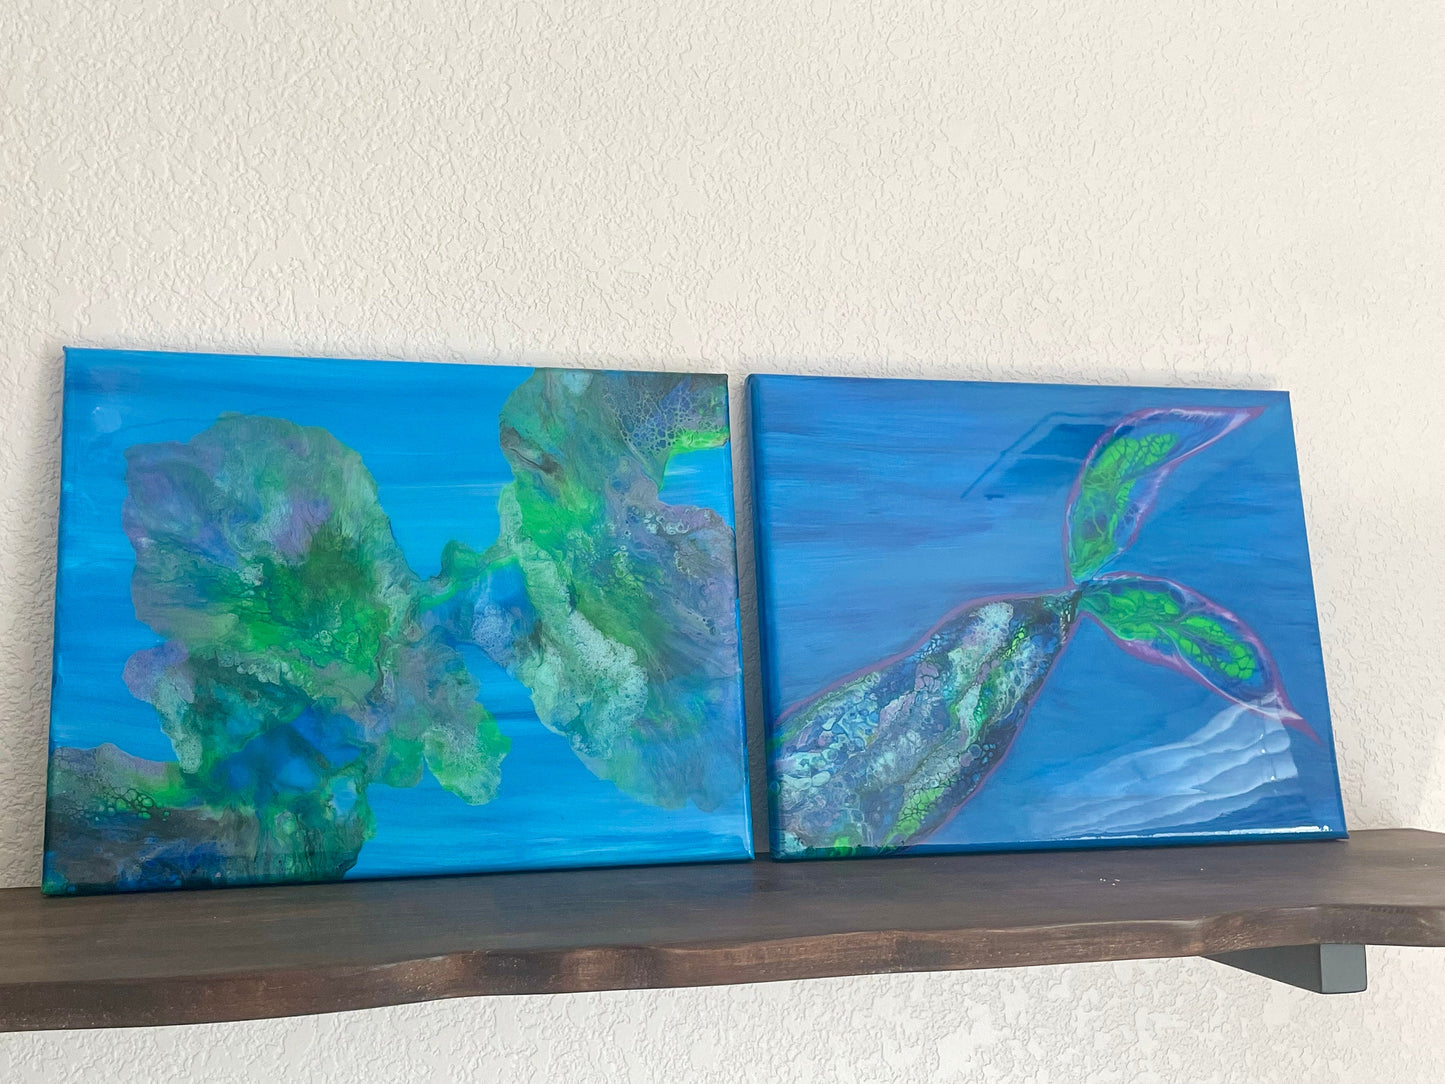 Mermaid Tail Painting Ocean Scene on 11x14 Canvas, "Under the Sea" Tropical Wall Art, Fluid Art Home Decor, Acrylic Paint Pour